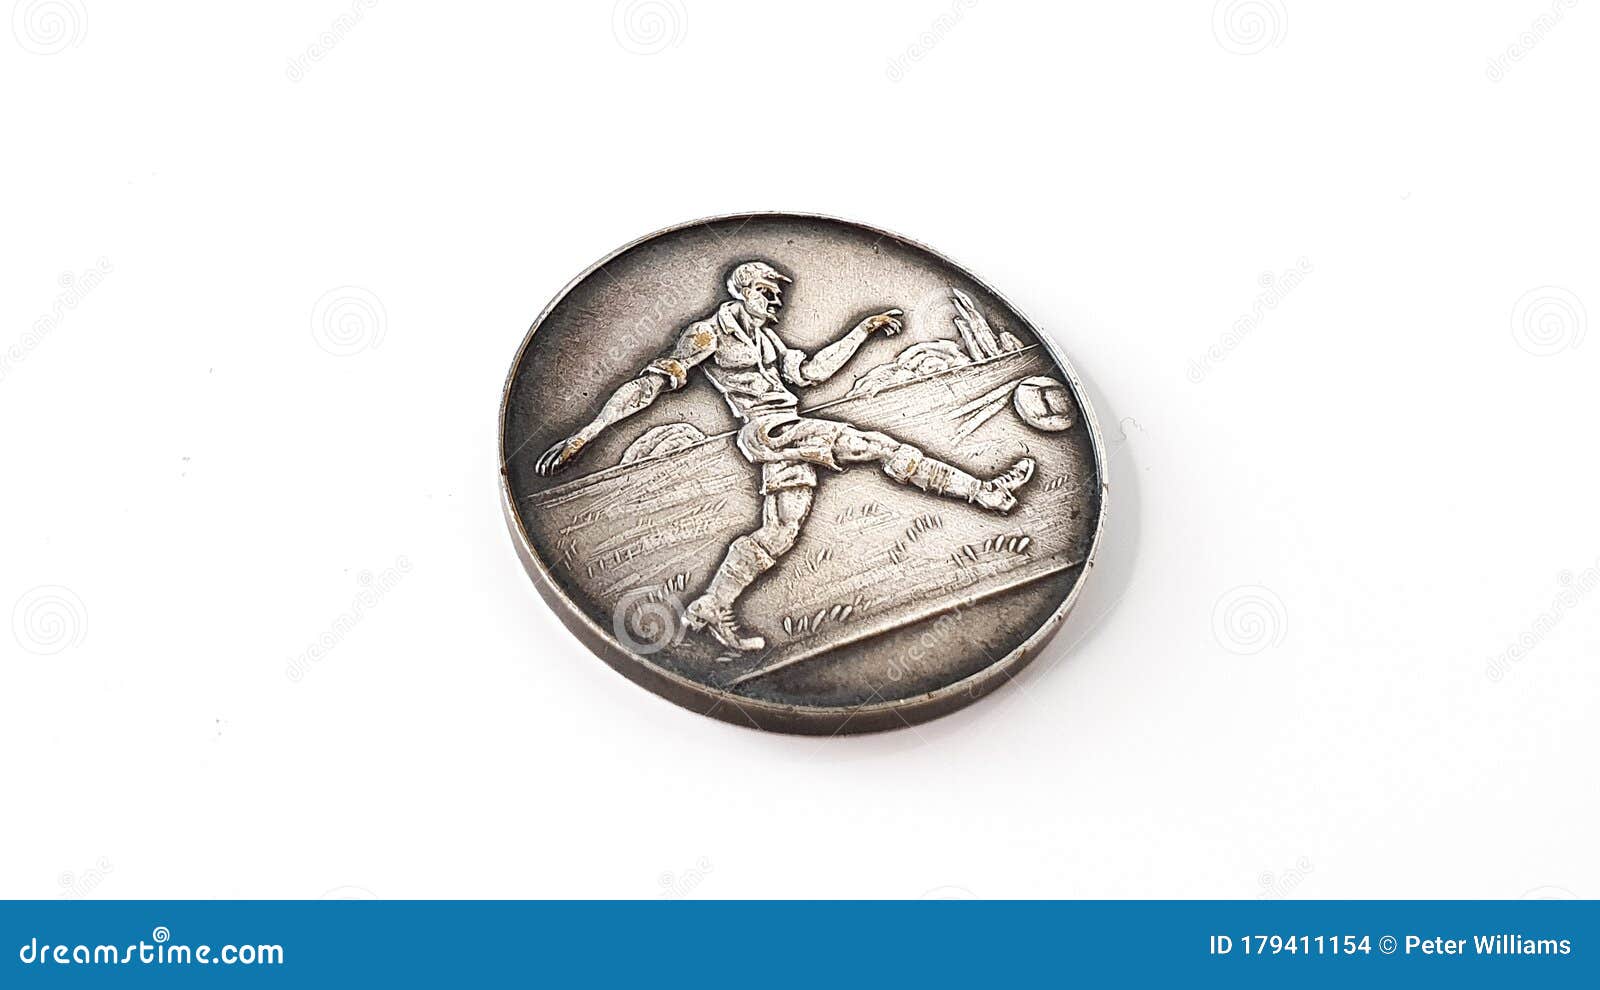 1940Ã¢â¬â¢s army cadet force football medals